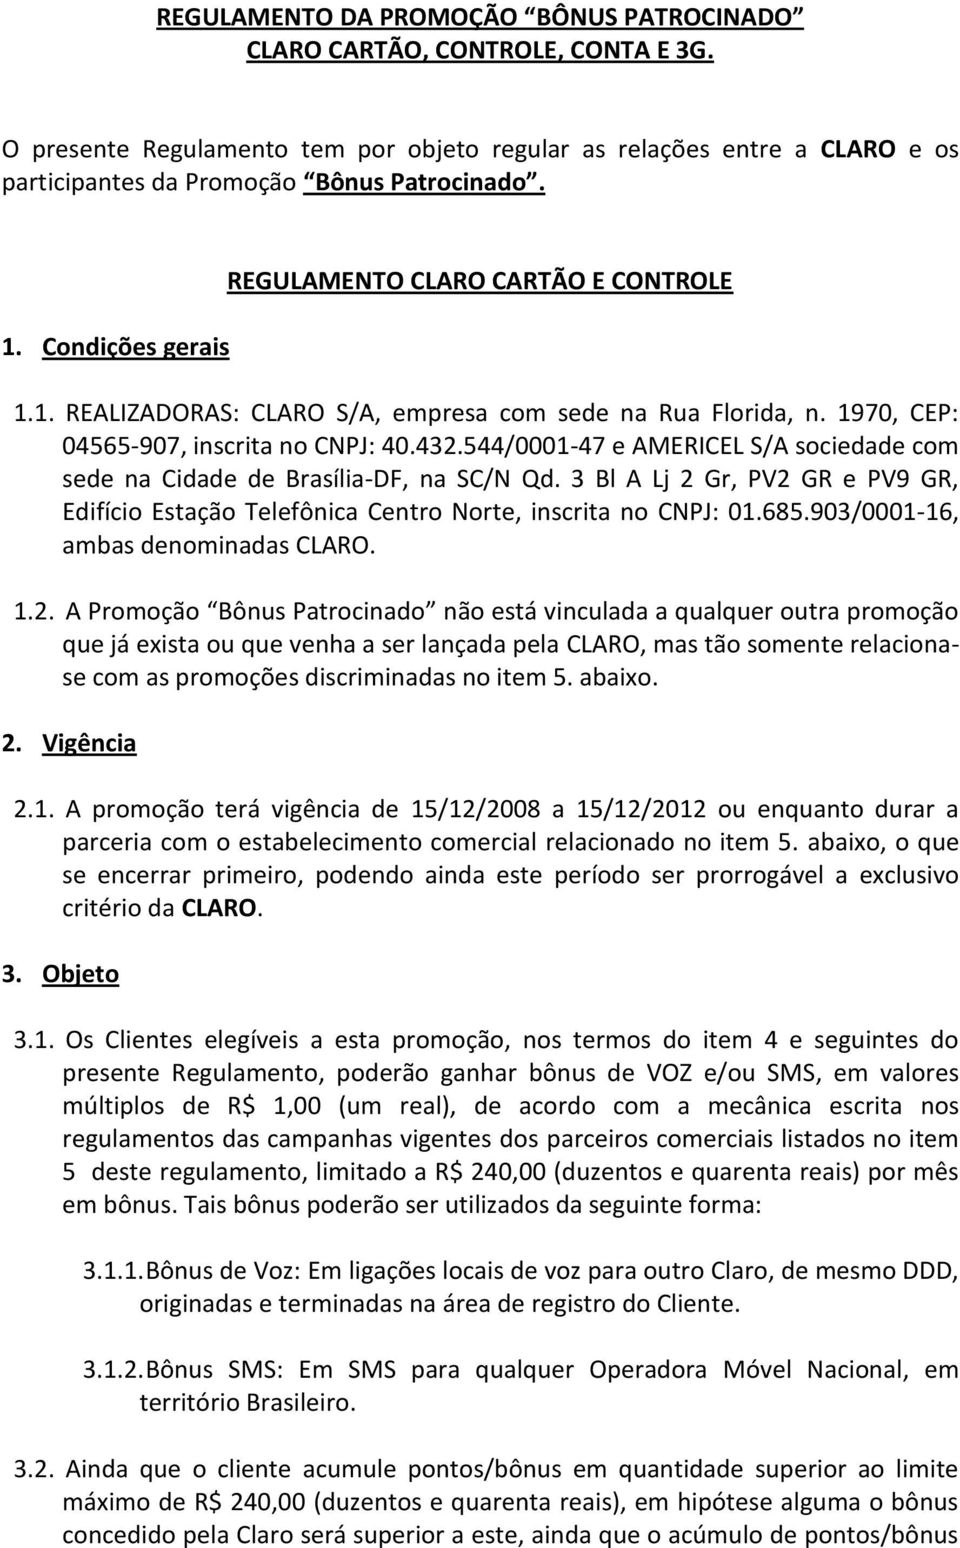 544/0001-47 e AMERICEL S/A sociedade com sede na Cidade de Brasília-DF, na SC/N Qd. 3 Bl A Lj 2 Gr, PV2 GR e PV9 GR, Edifício Estação Telefônica Centro Norte, inscrita no CNPJ: 01.685.